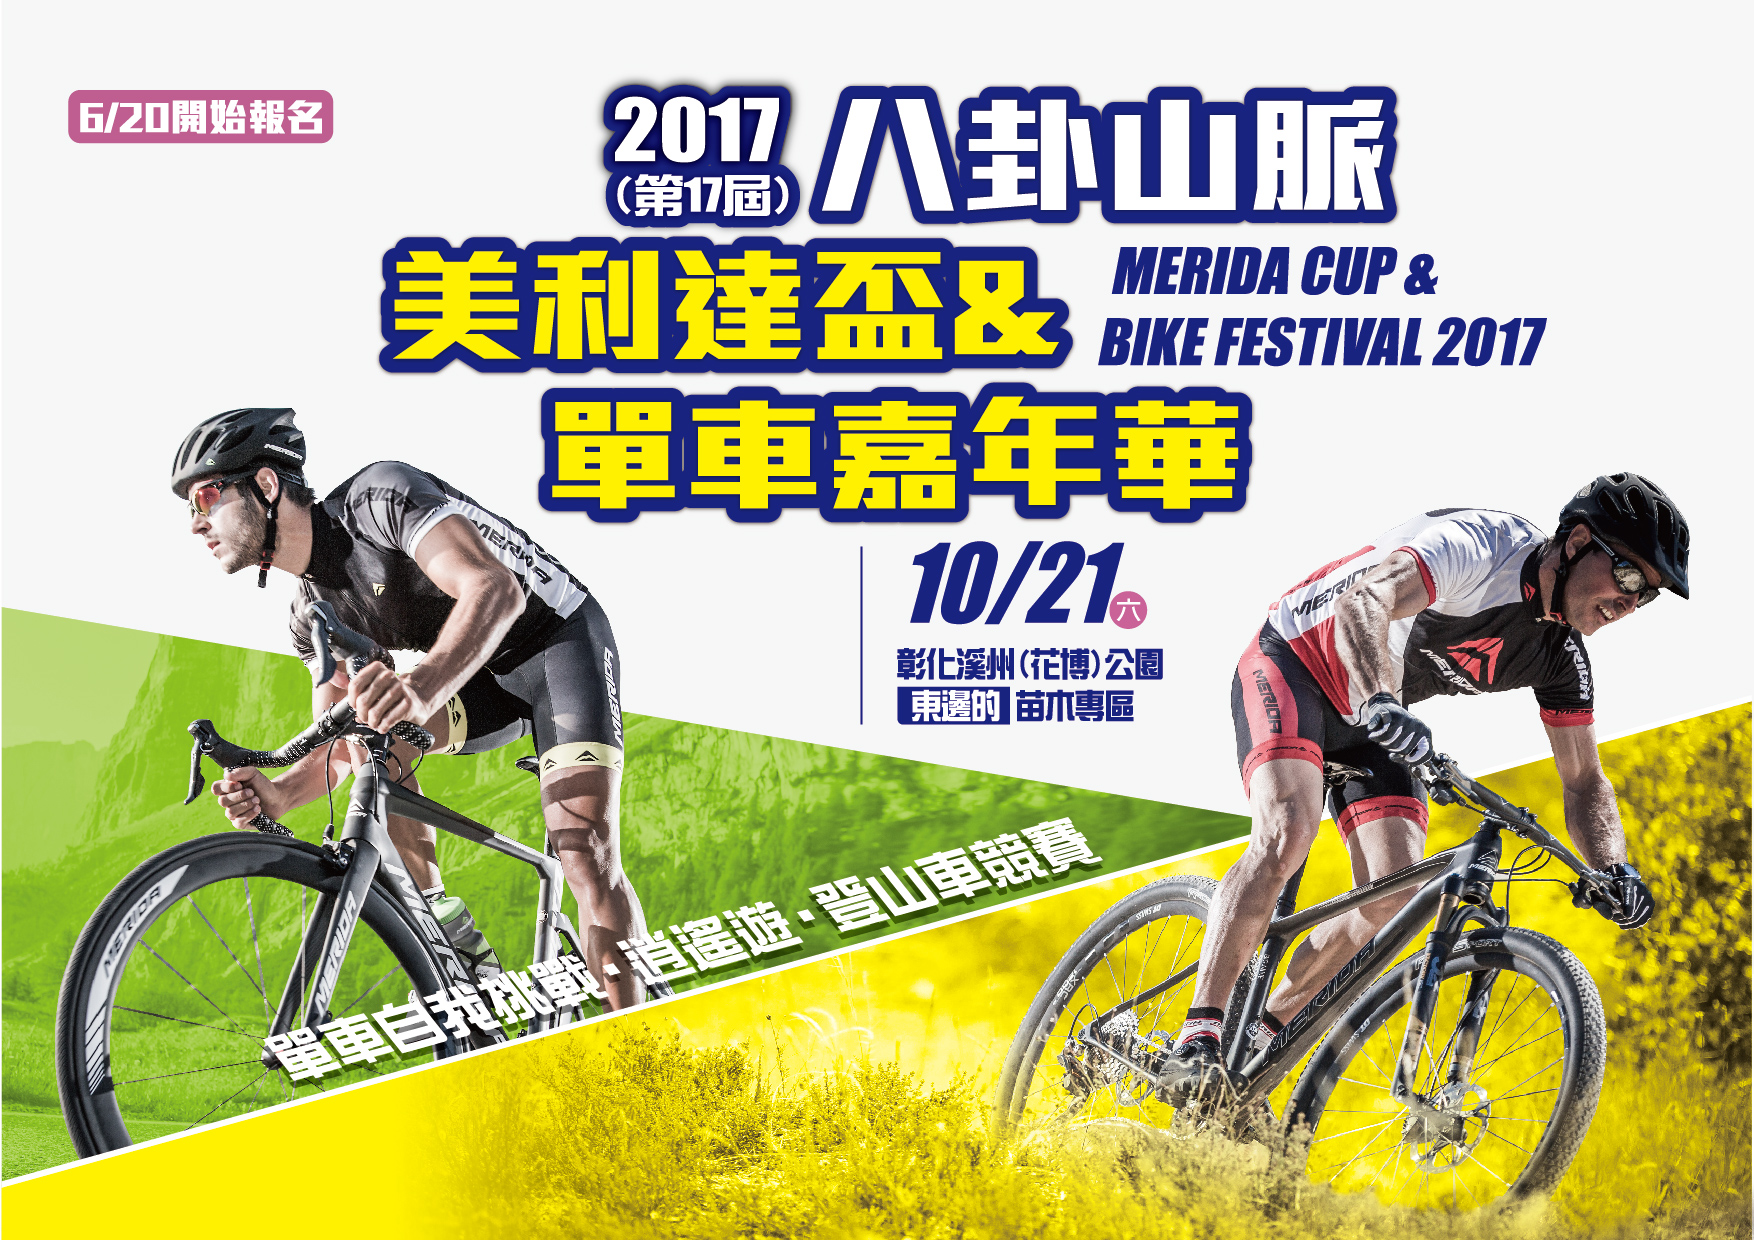 2017美利達盃橫式主視覺海報美利達自行車提供